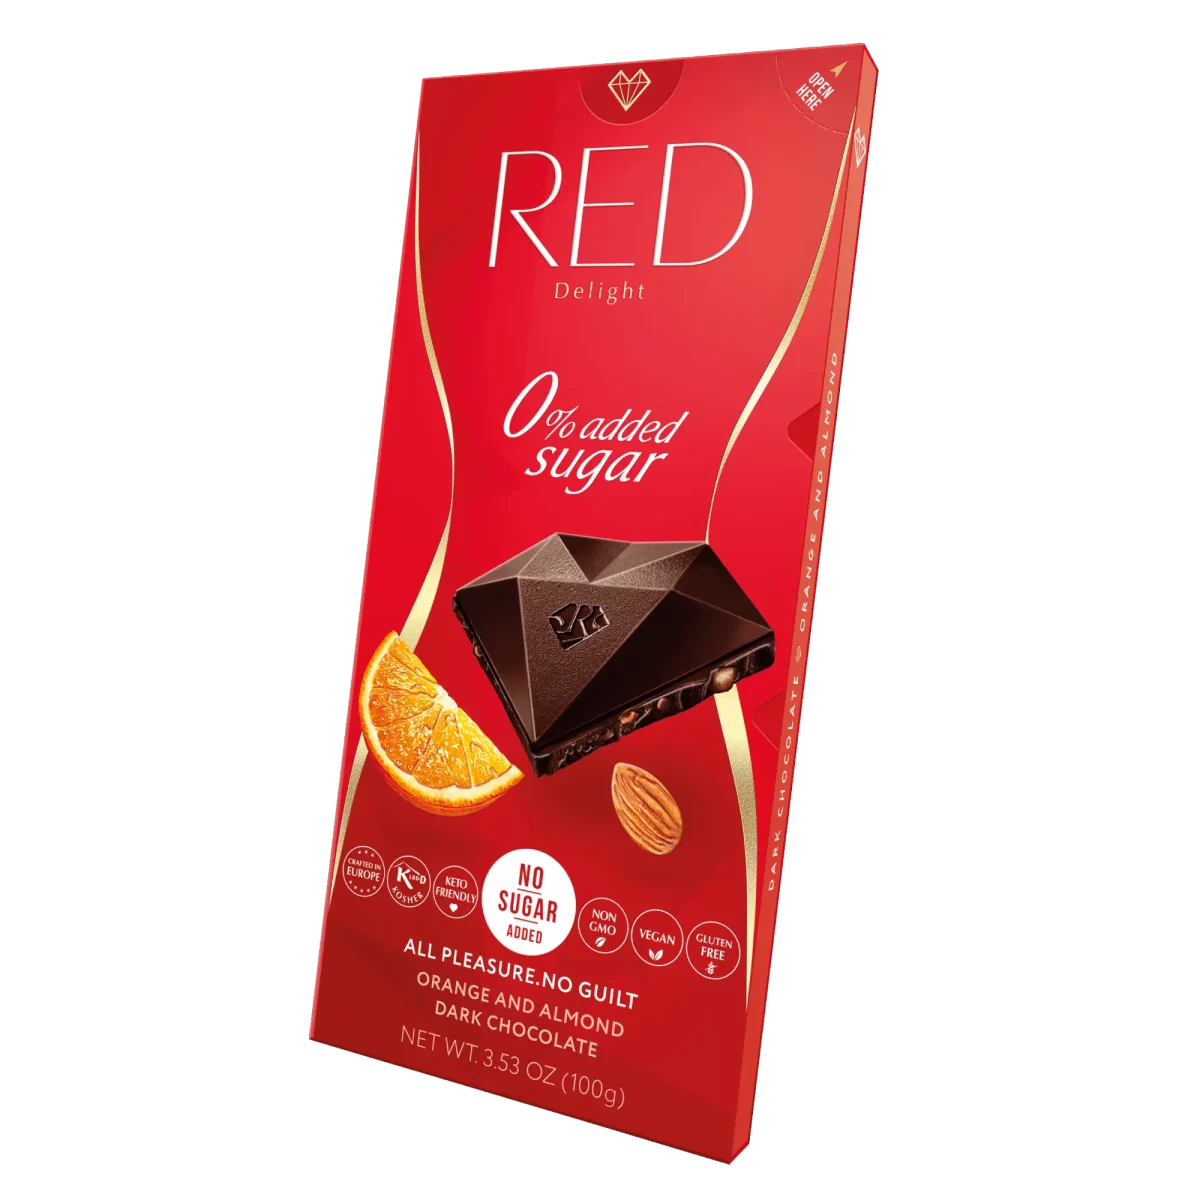 Red Dunkle Schokolade Mandel Orange zuckerfreie Schokolade vegan ohne Zuckerzusatz laktosefrei glutenfrei ohne Palmöl schräg